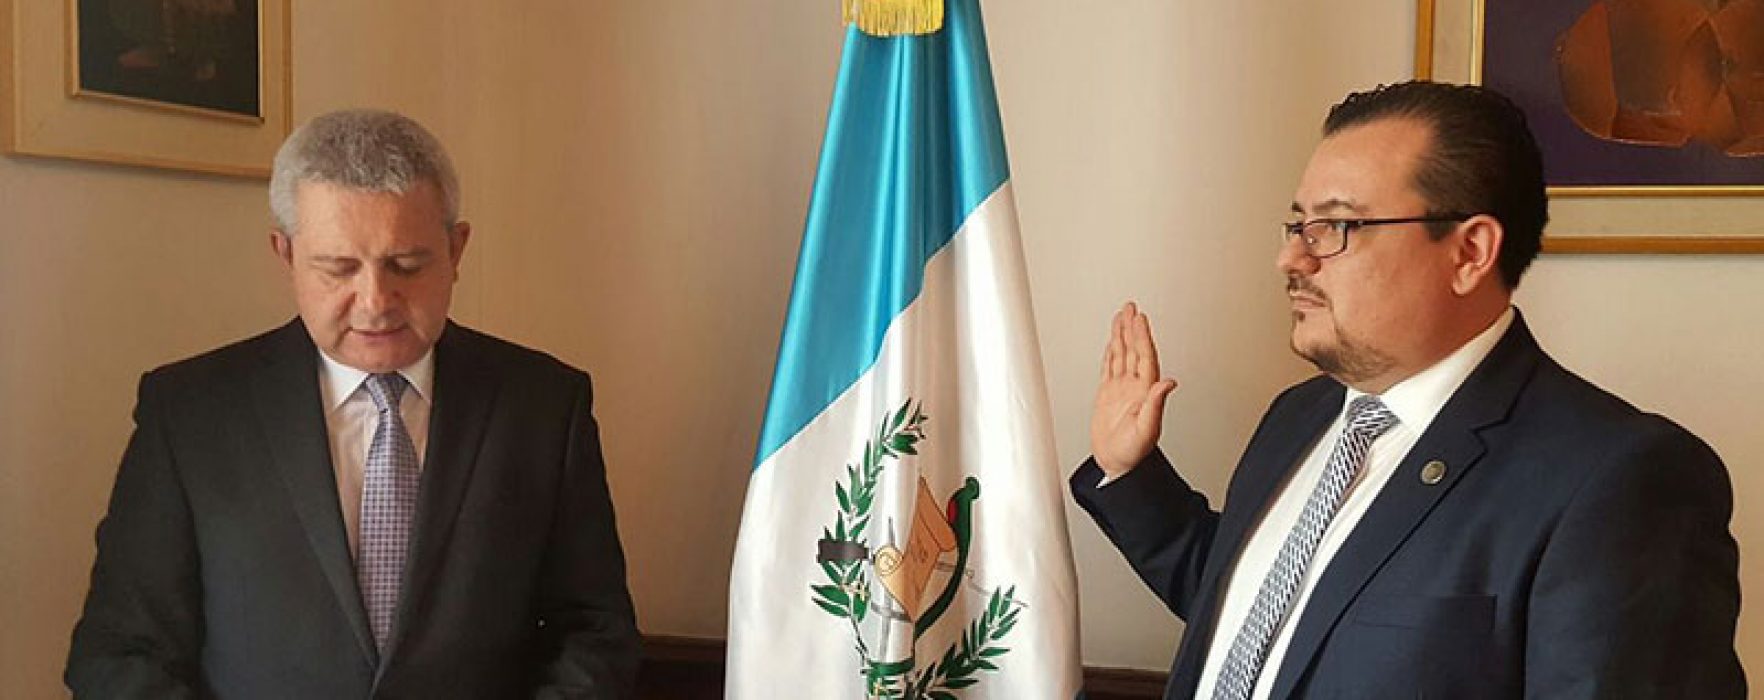 Juan Pablo Nieto Cotera nuevo Subdirector General de Inguat